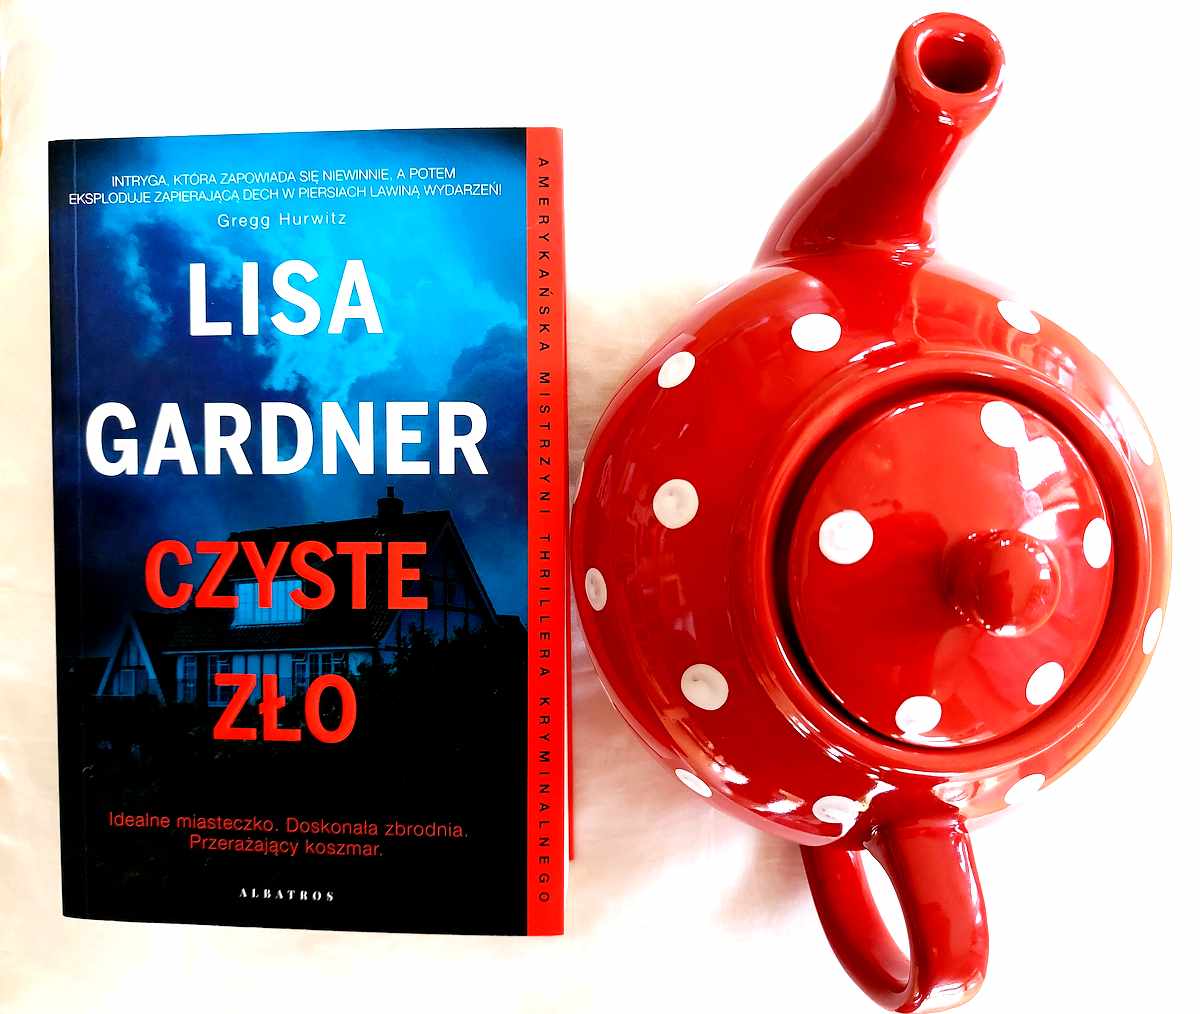 Okładka Czystego zła Lisy Gardner.